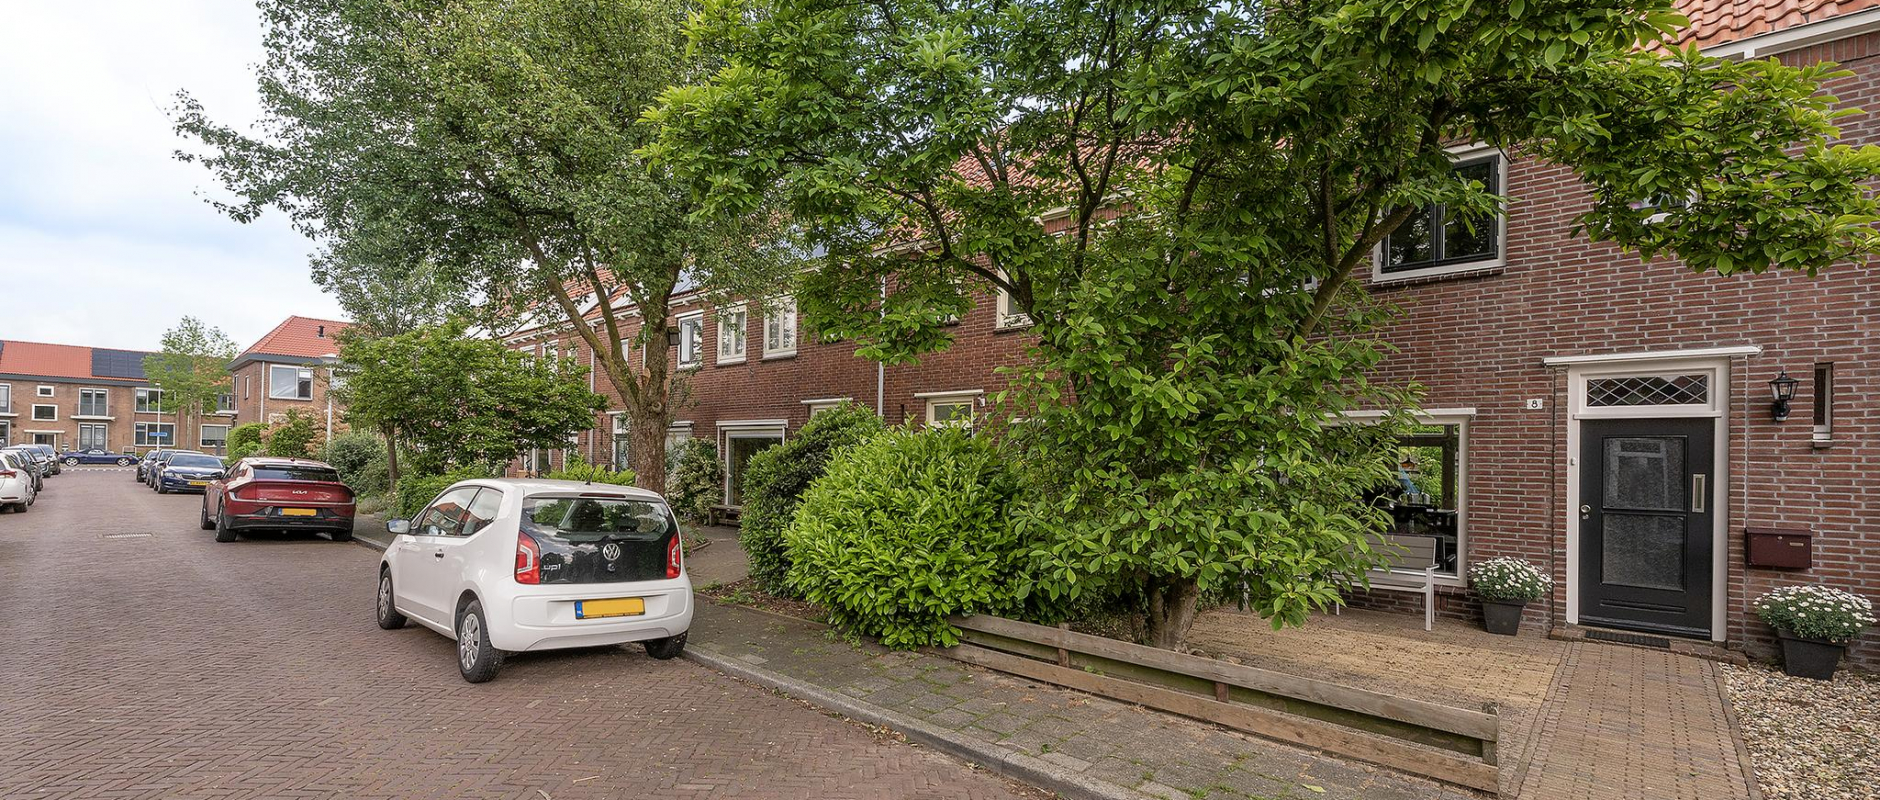 Woning te koop aan de Johan de Wittstraat 8 te Zwolle